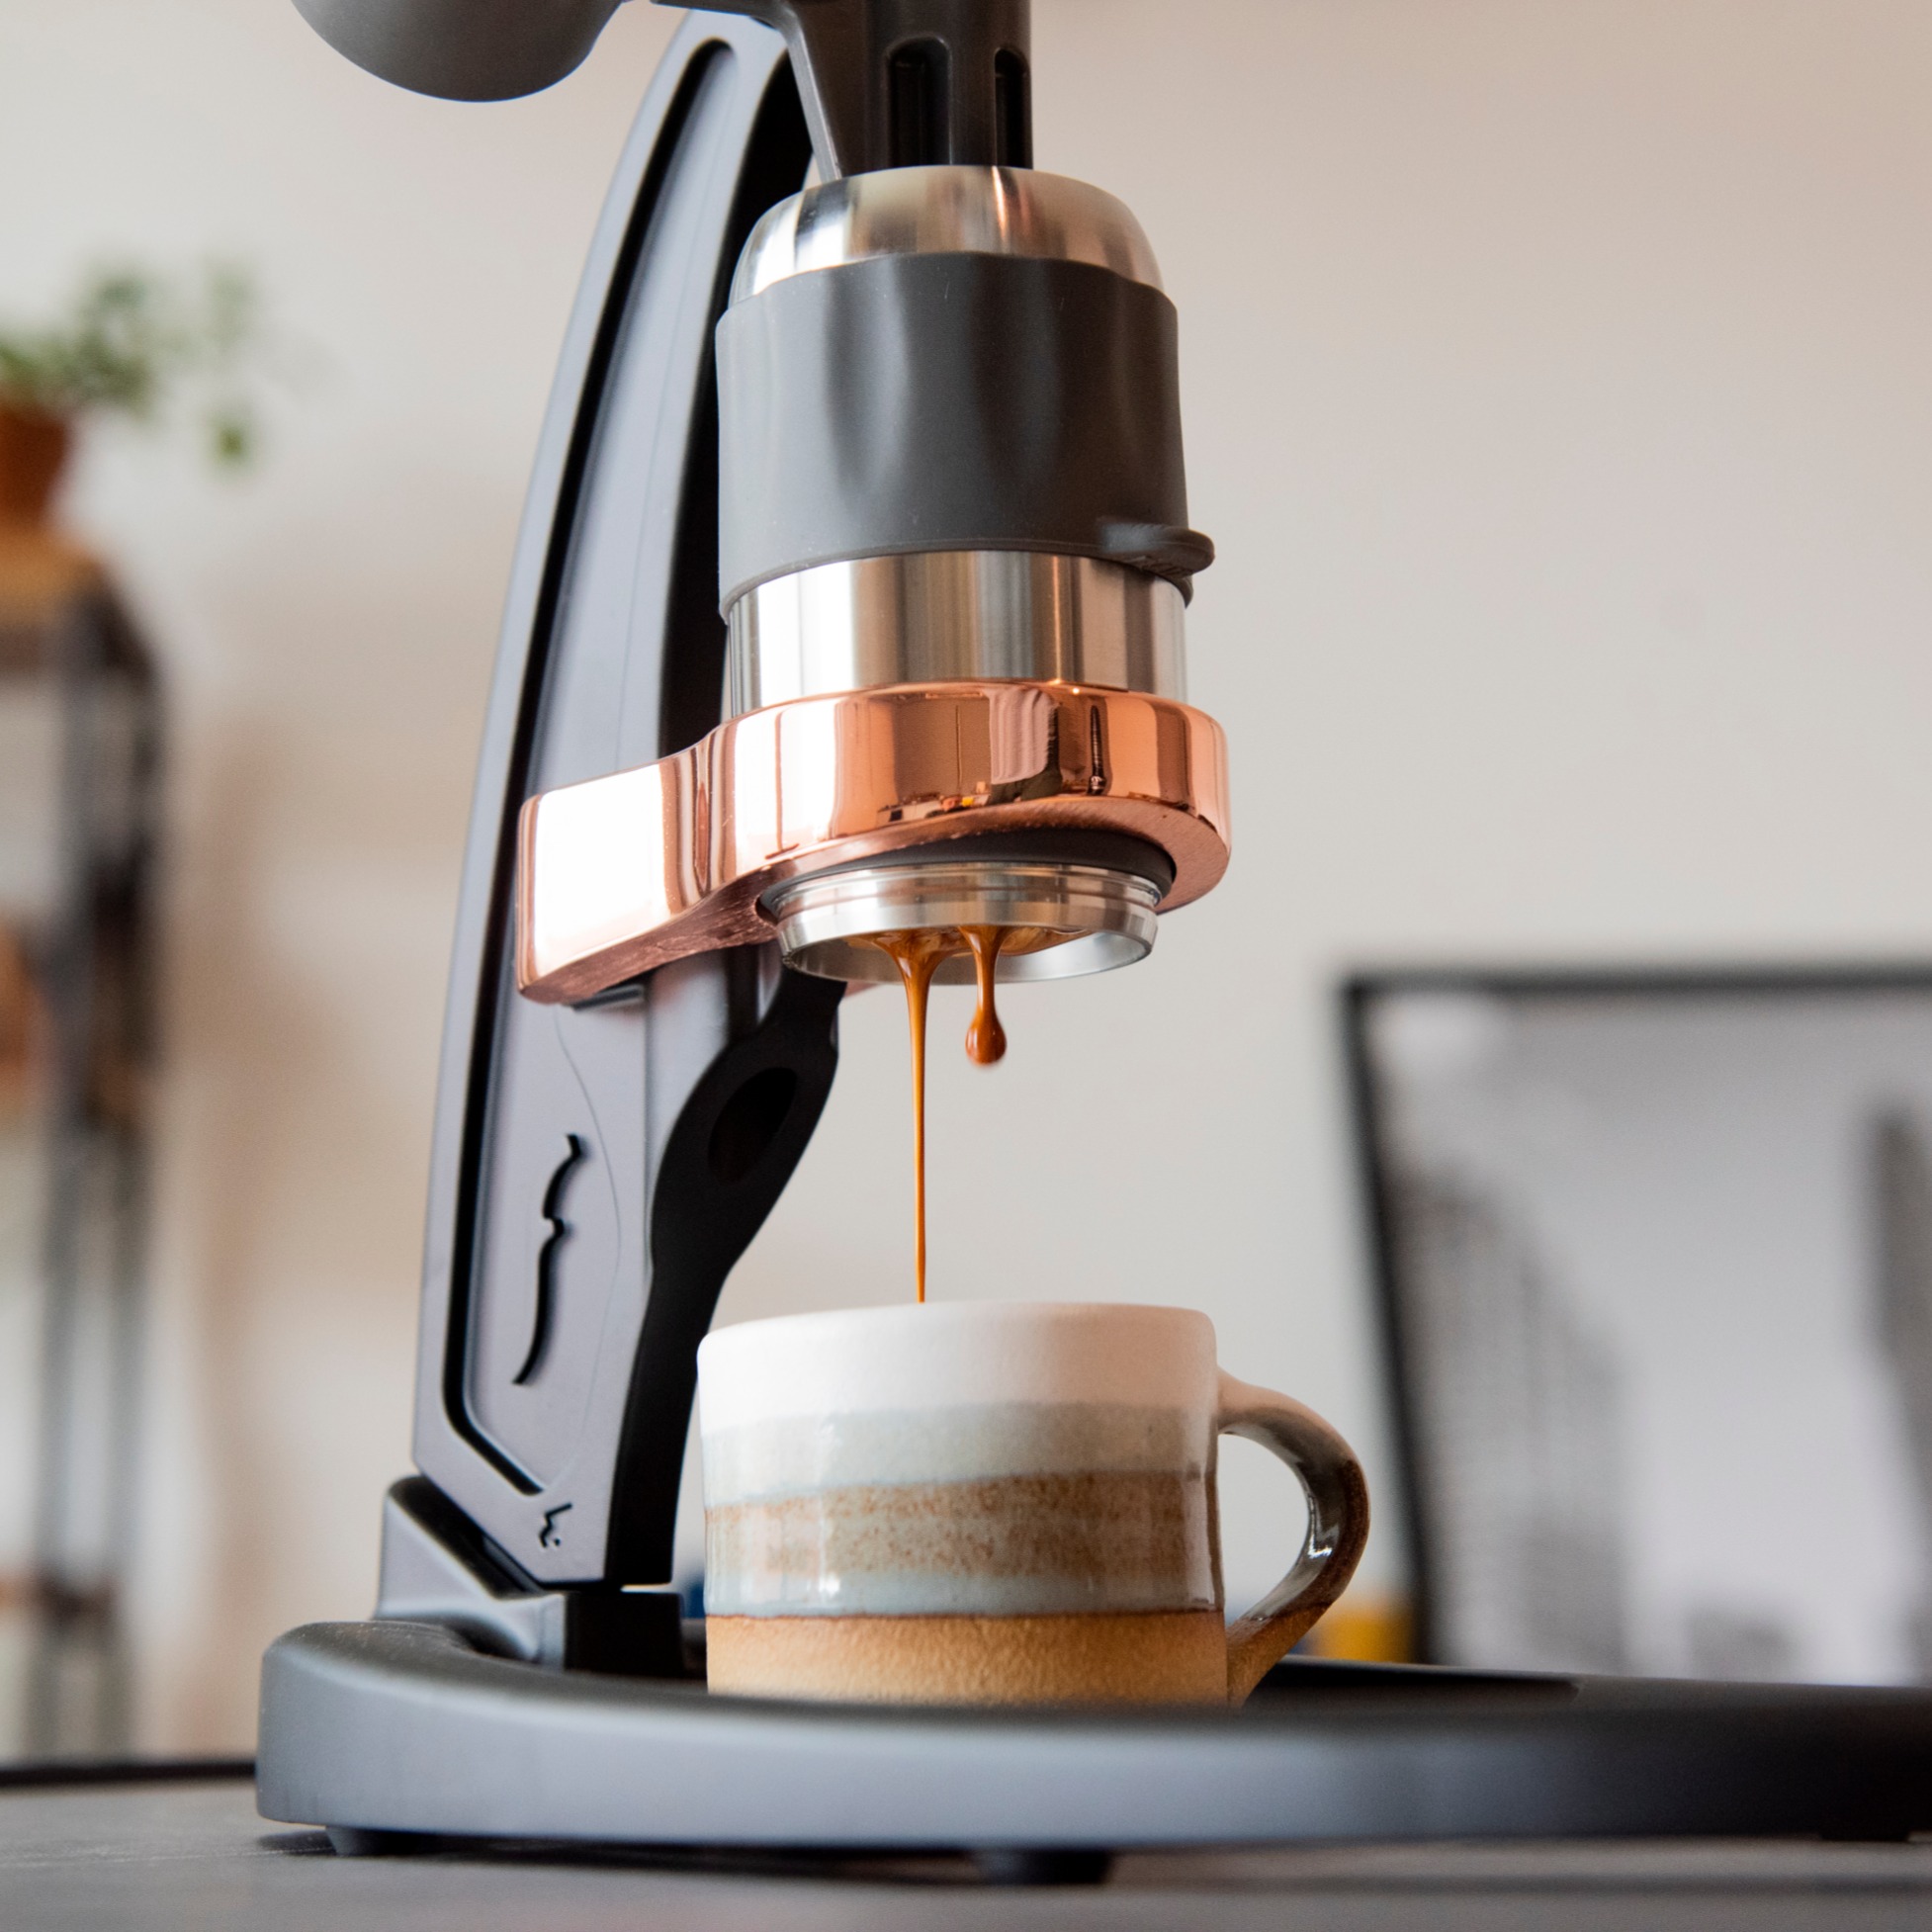 Premium Kit for Espresso Barista coffee machine - Krome Brew